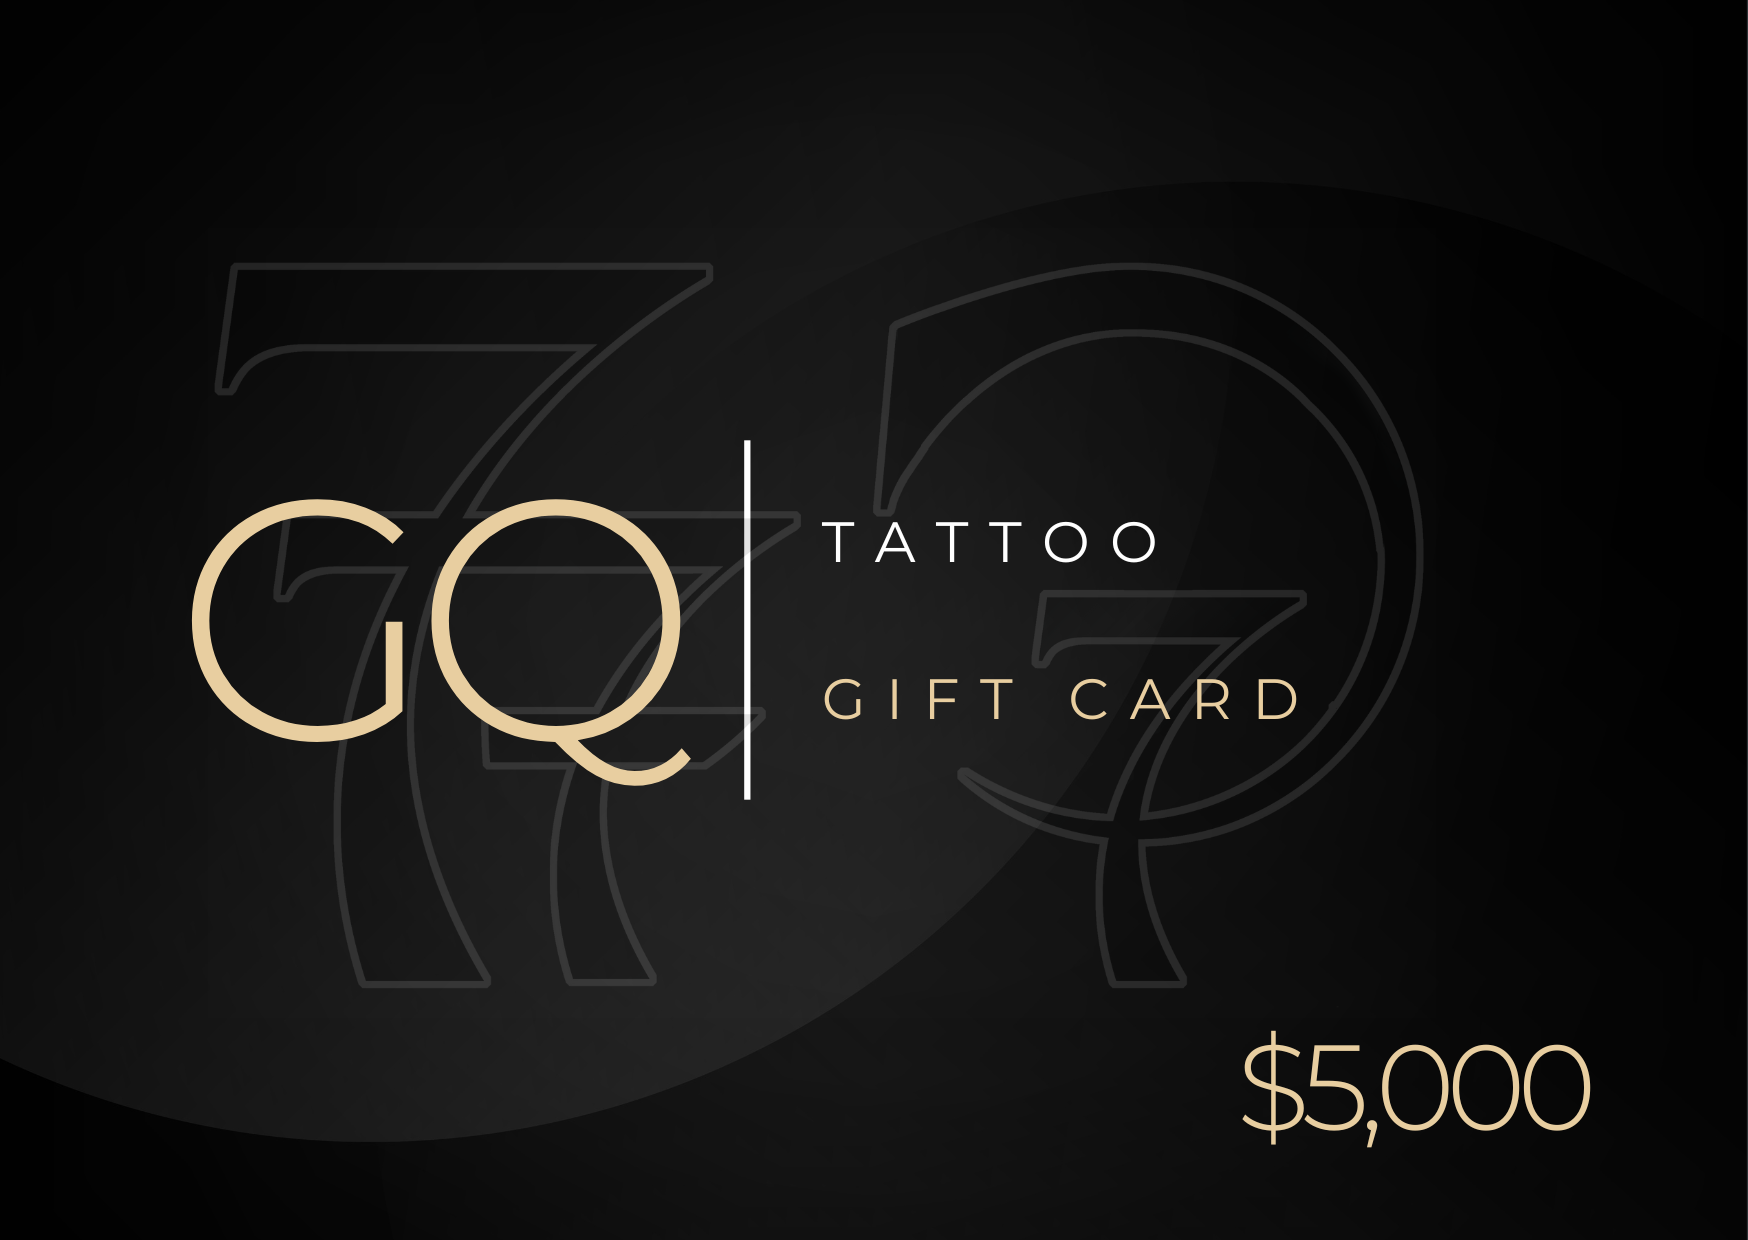 GQ tattoo gift card